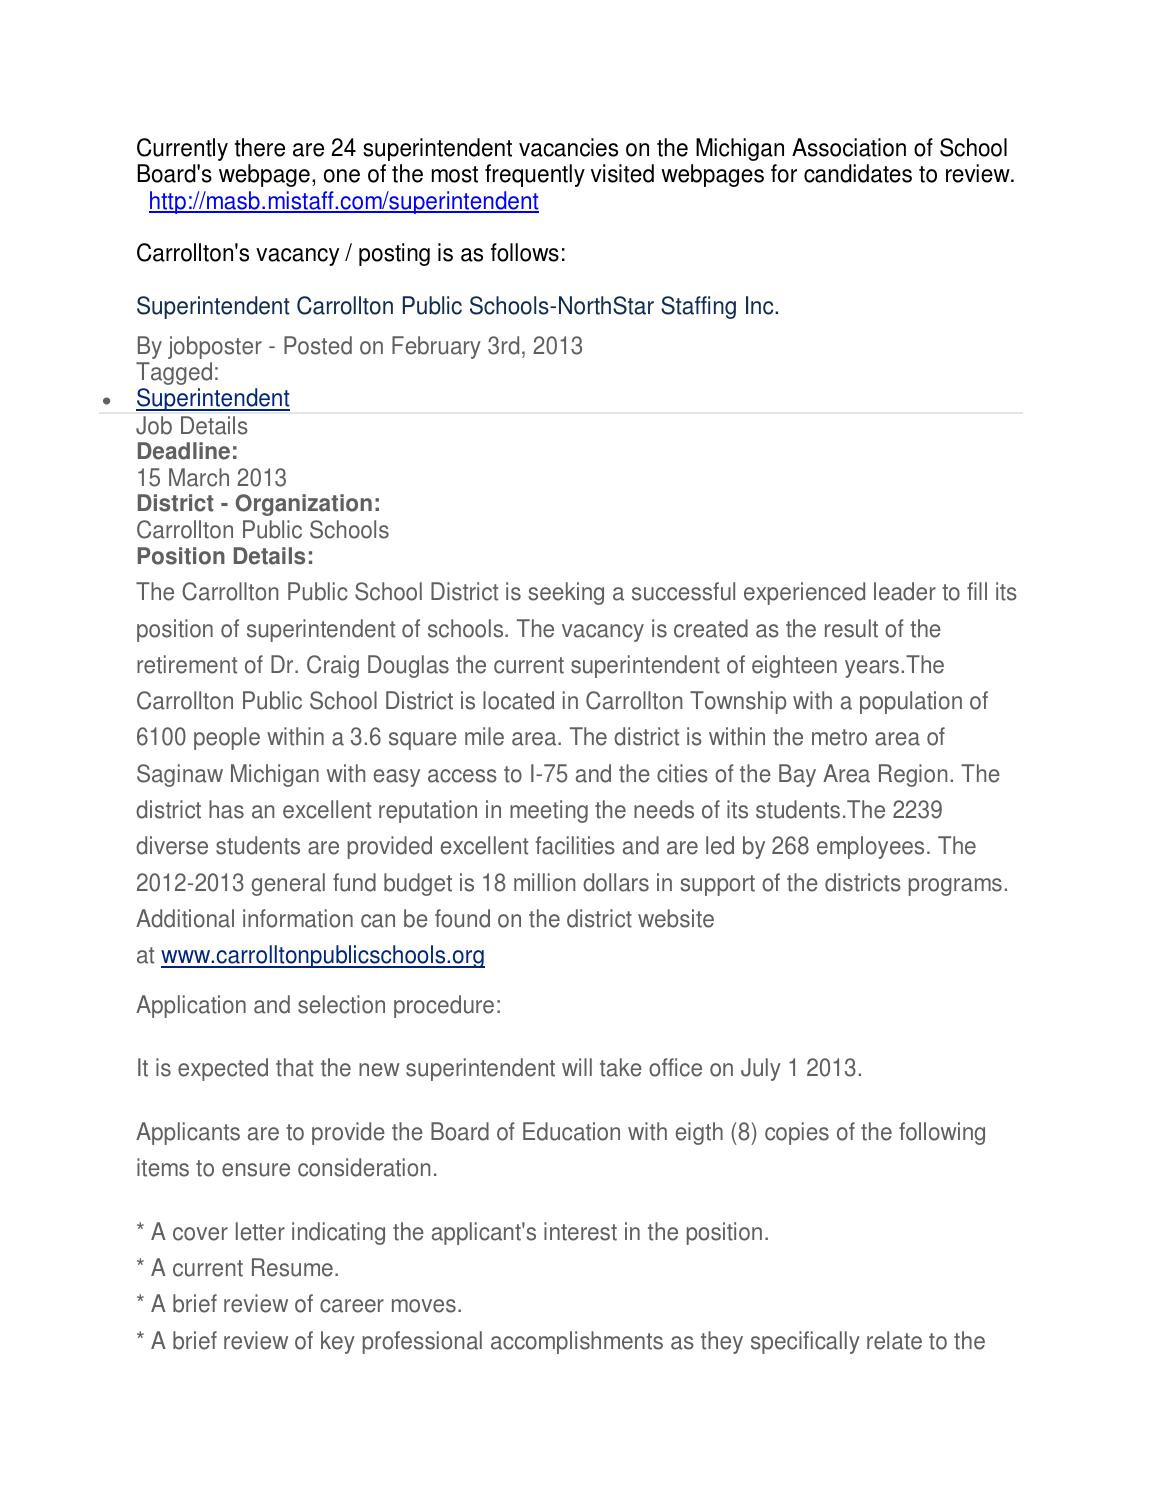 Sample Resume for School Superintendent Position Resume for Superintendent Position – Ferel